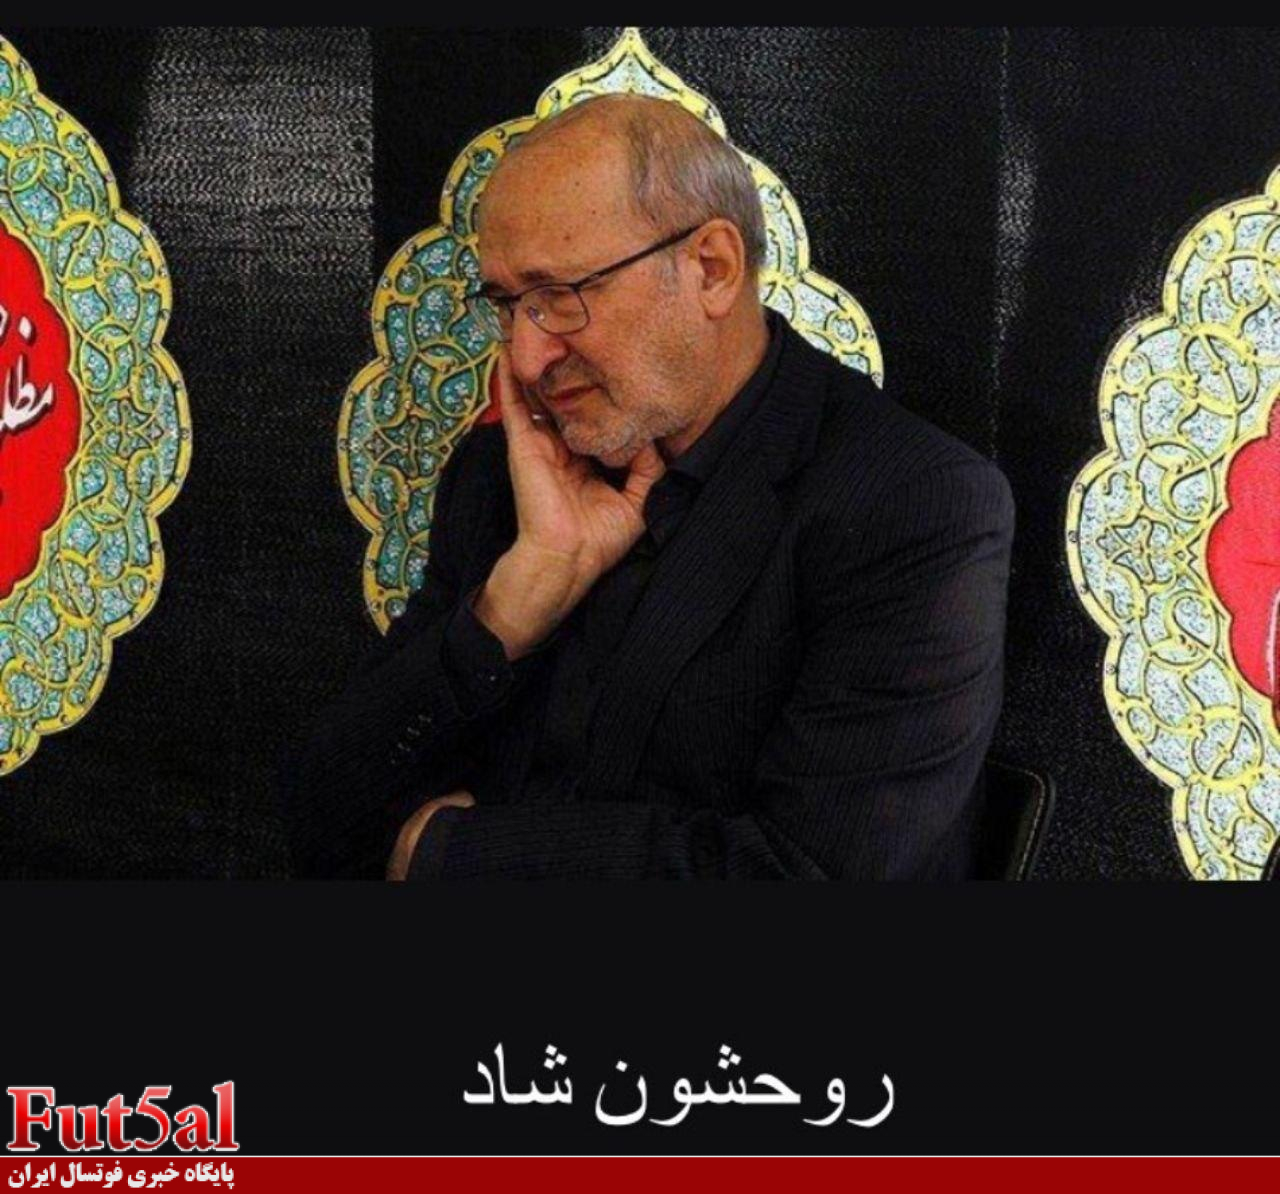 شوک به فوتسال اصفهان/بنیانگذار و عضو هیات مدیره گیتی پسند درگذشت